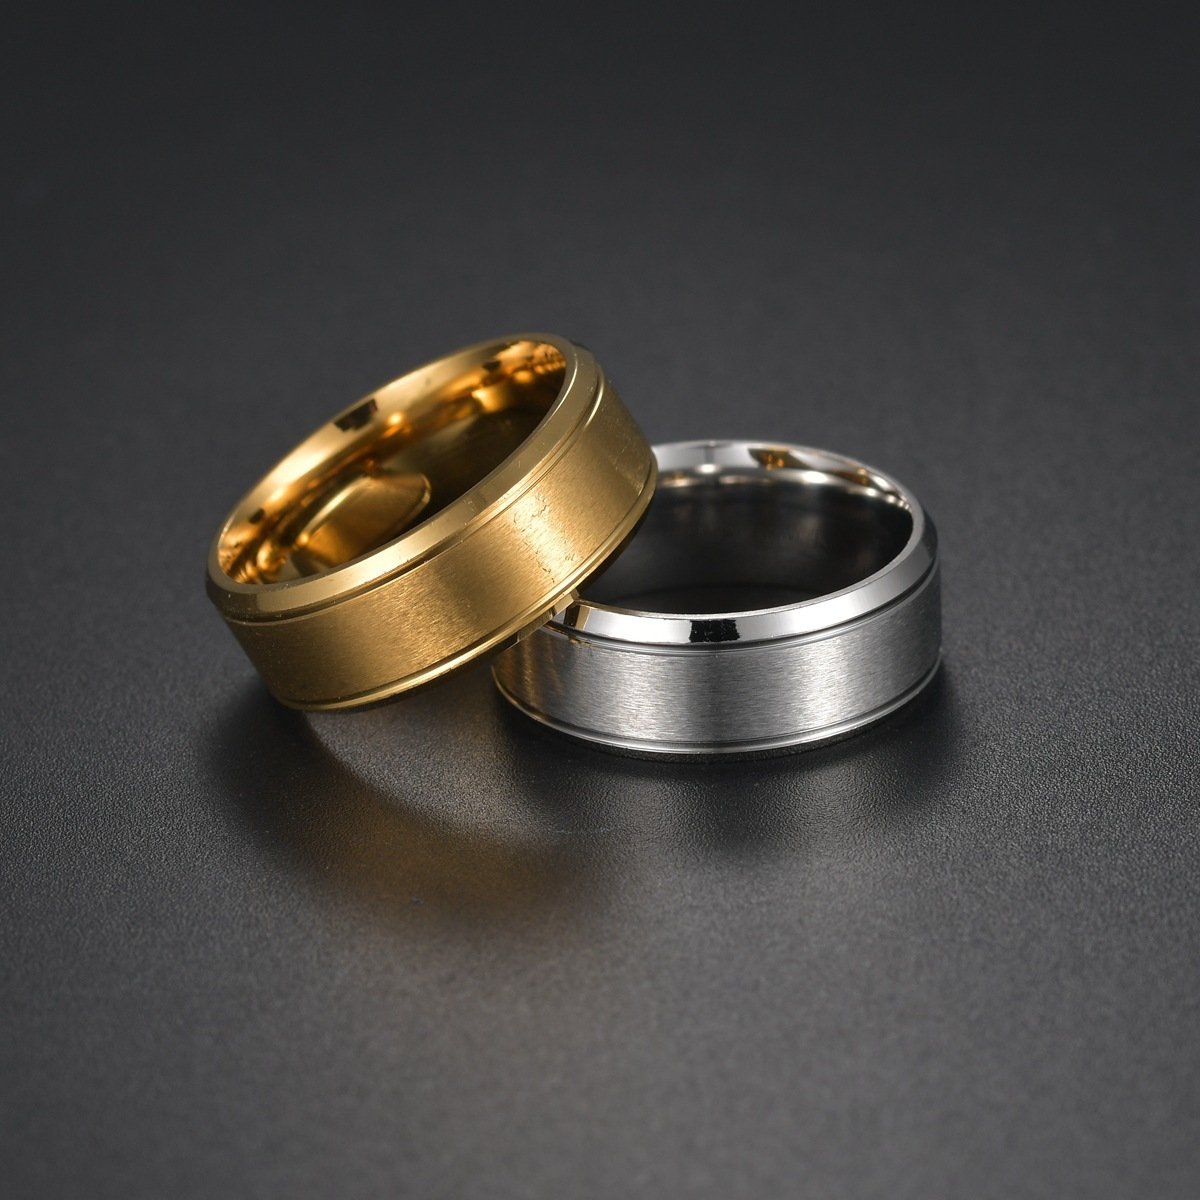 8MM Wedding Rings for Men – Black / Sliver / Gold Men's jewellery   3